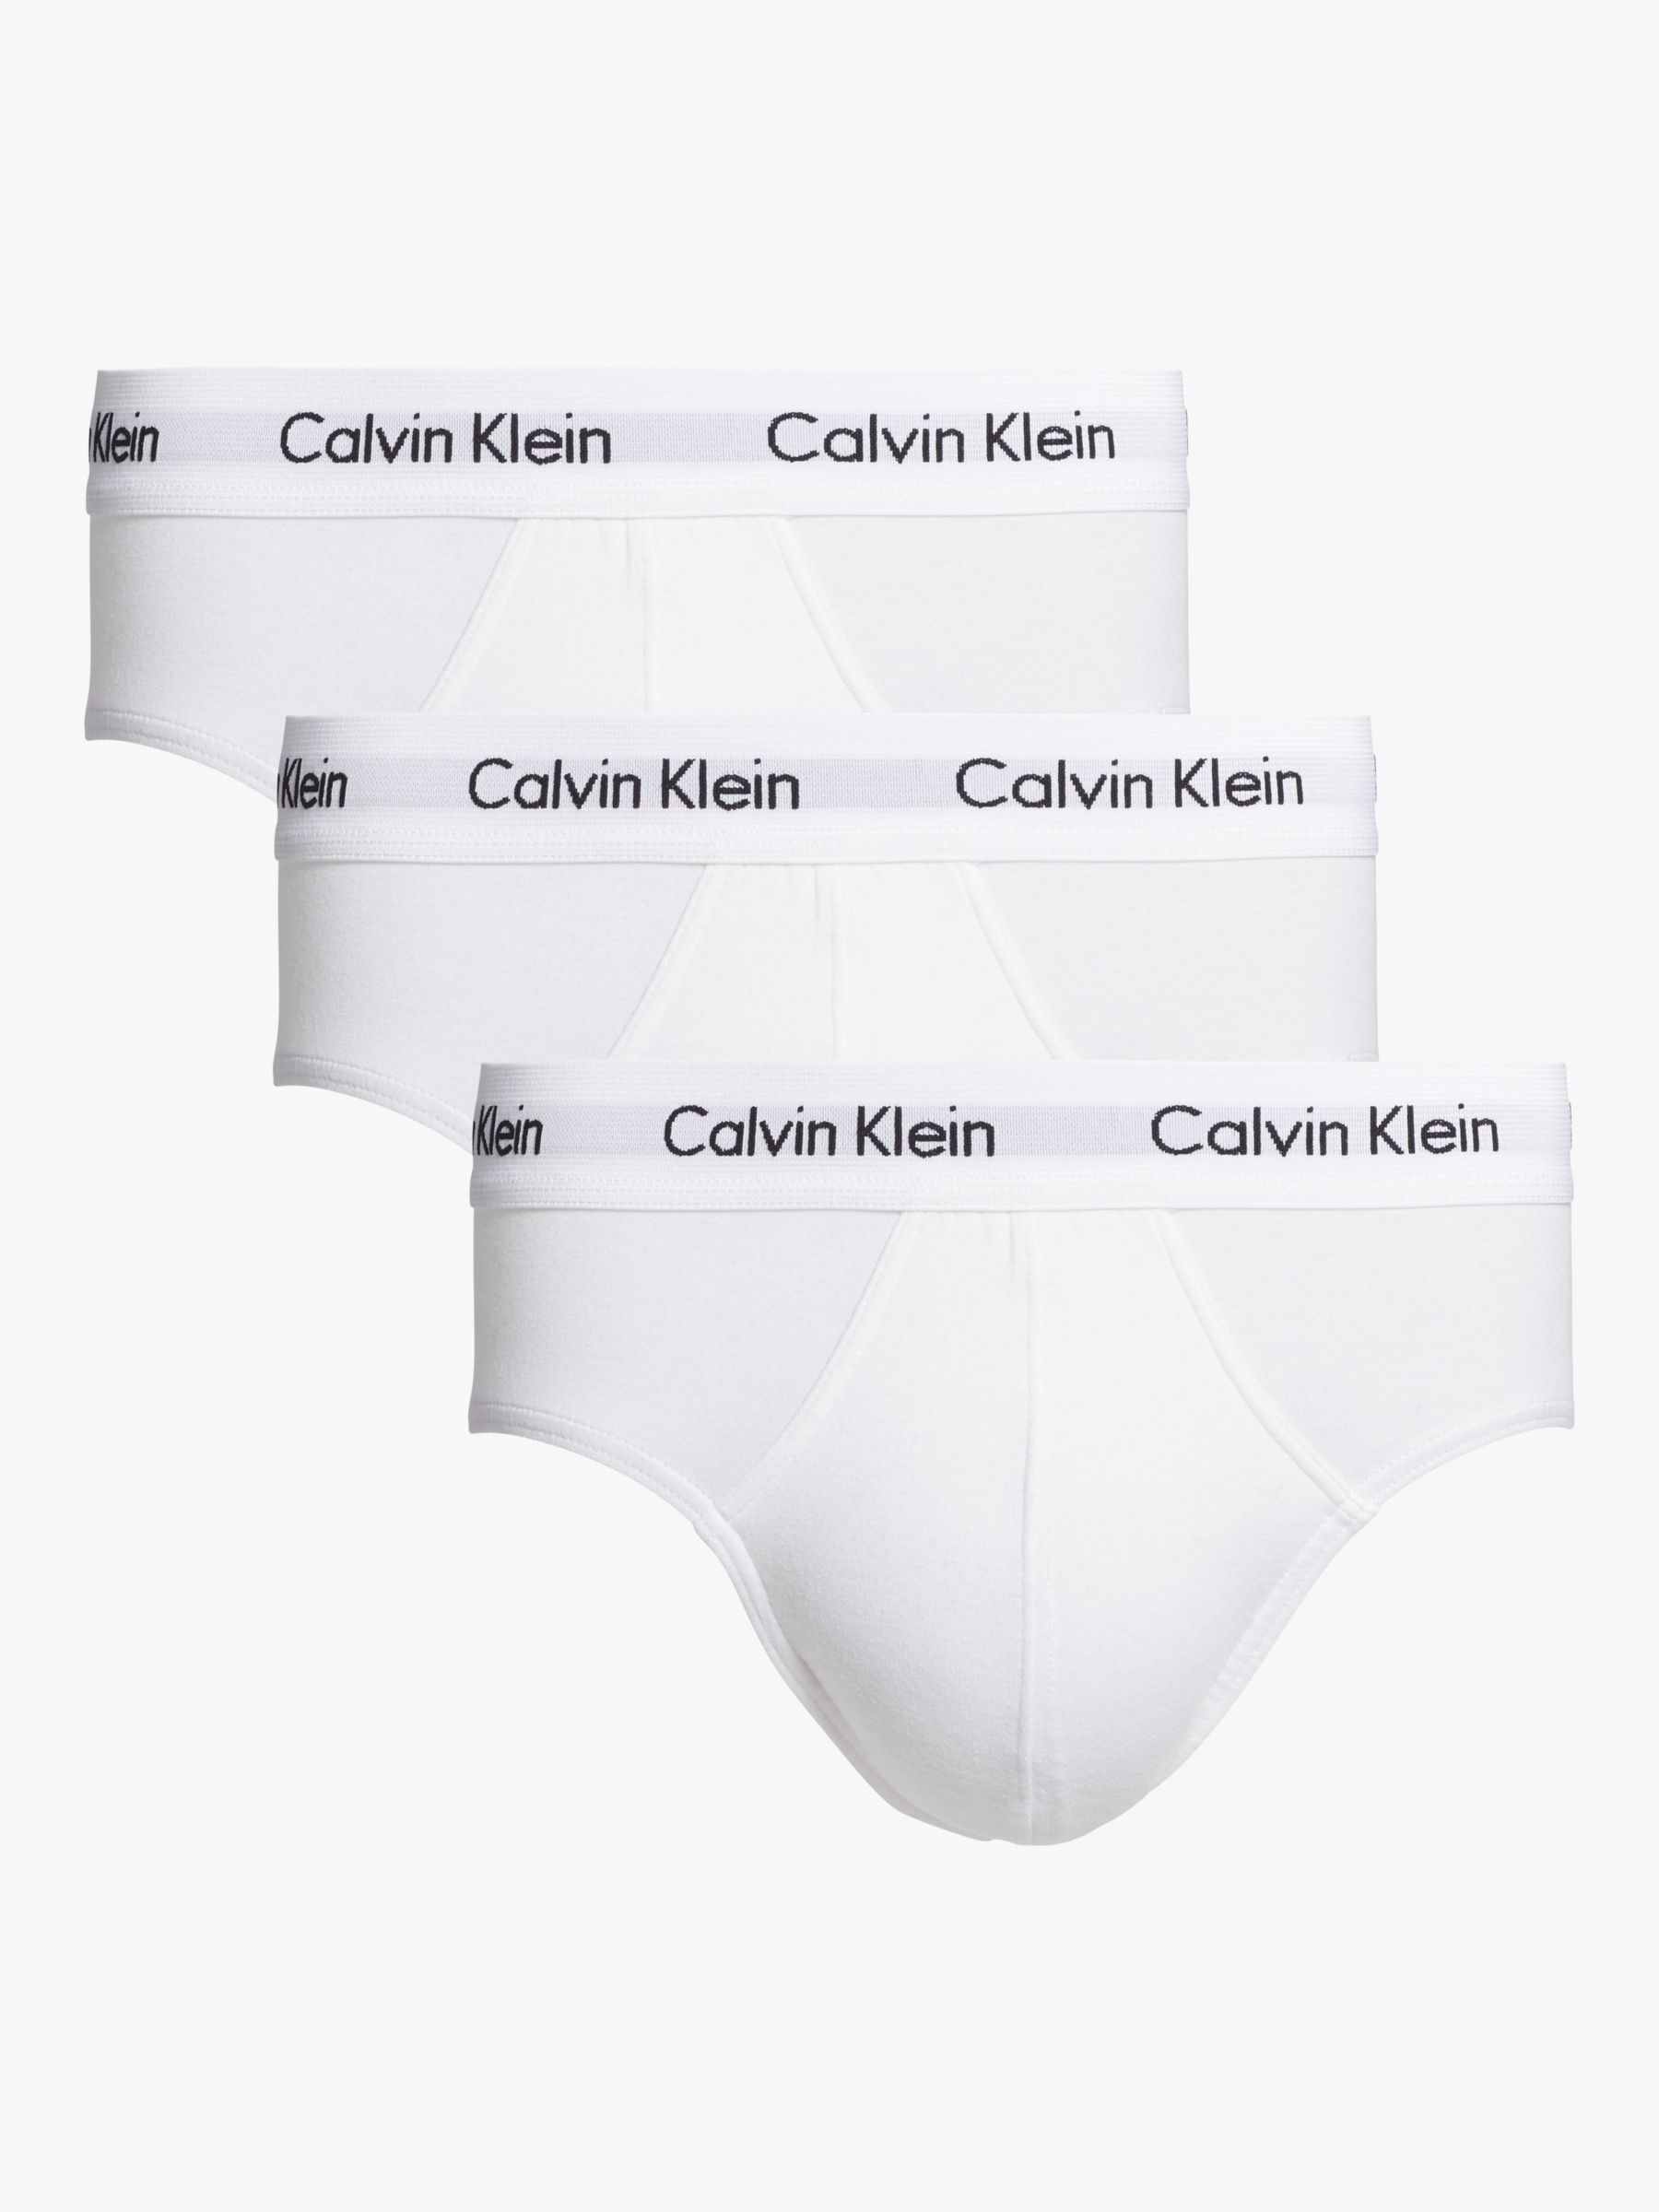 Calvin Klein Underwear Cotton Briefs, Pack of 3, White at John Lewis &  Partners